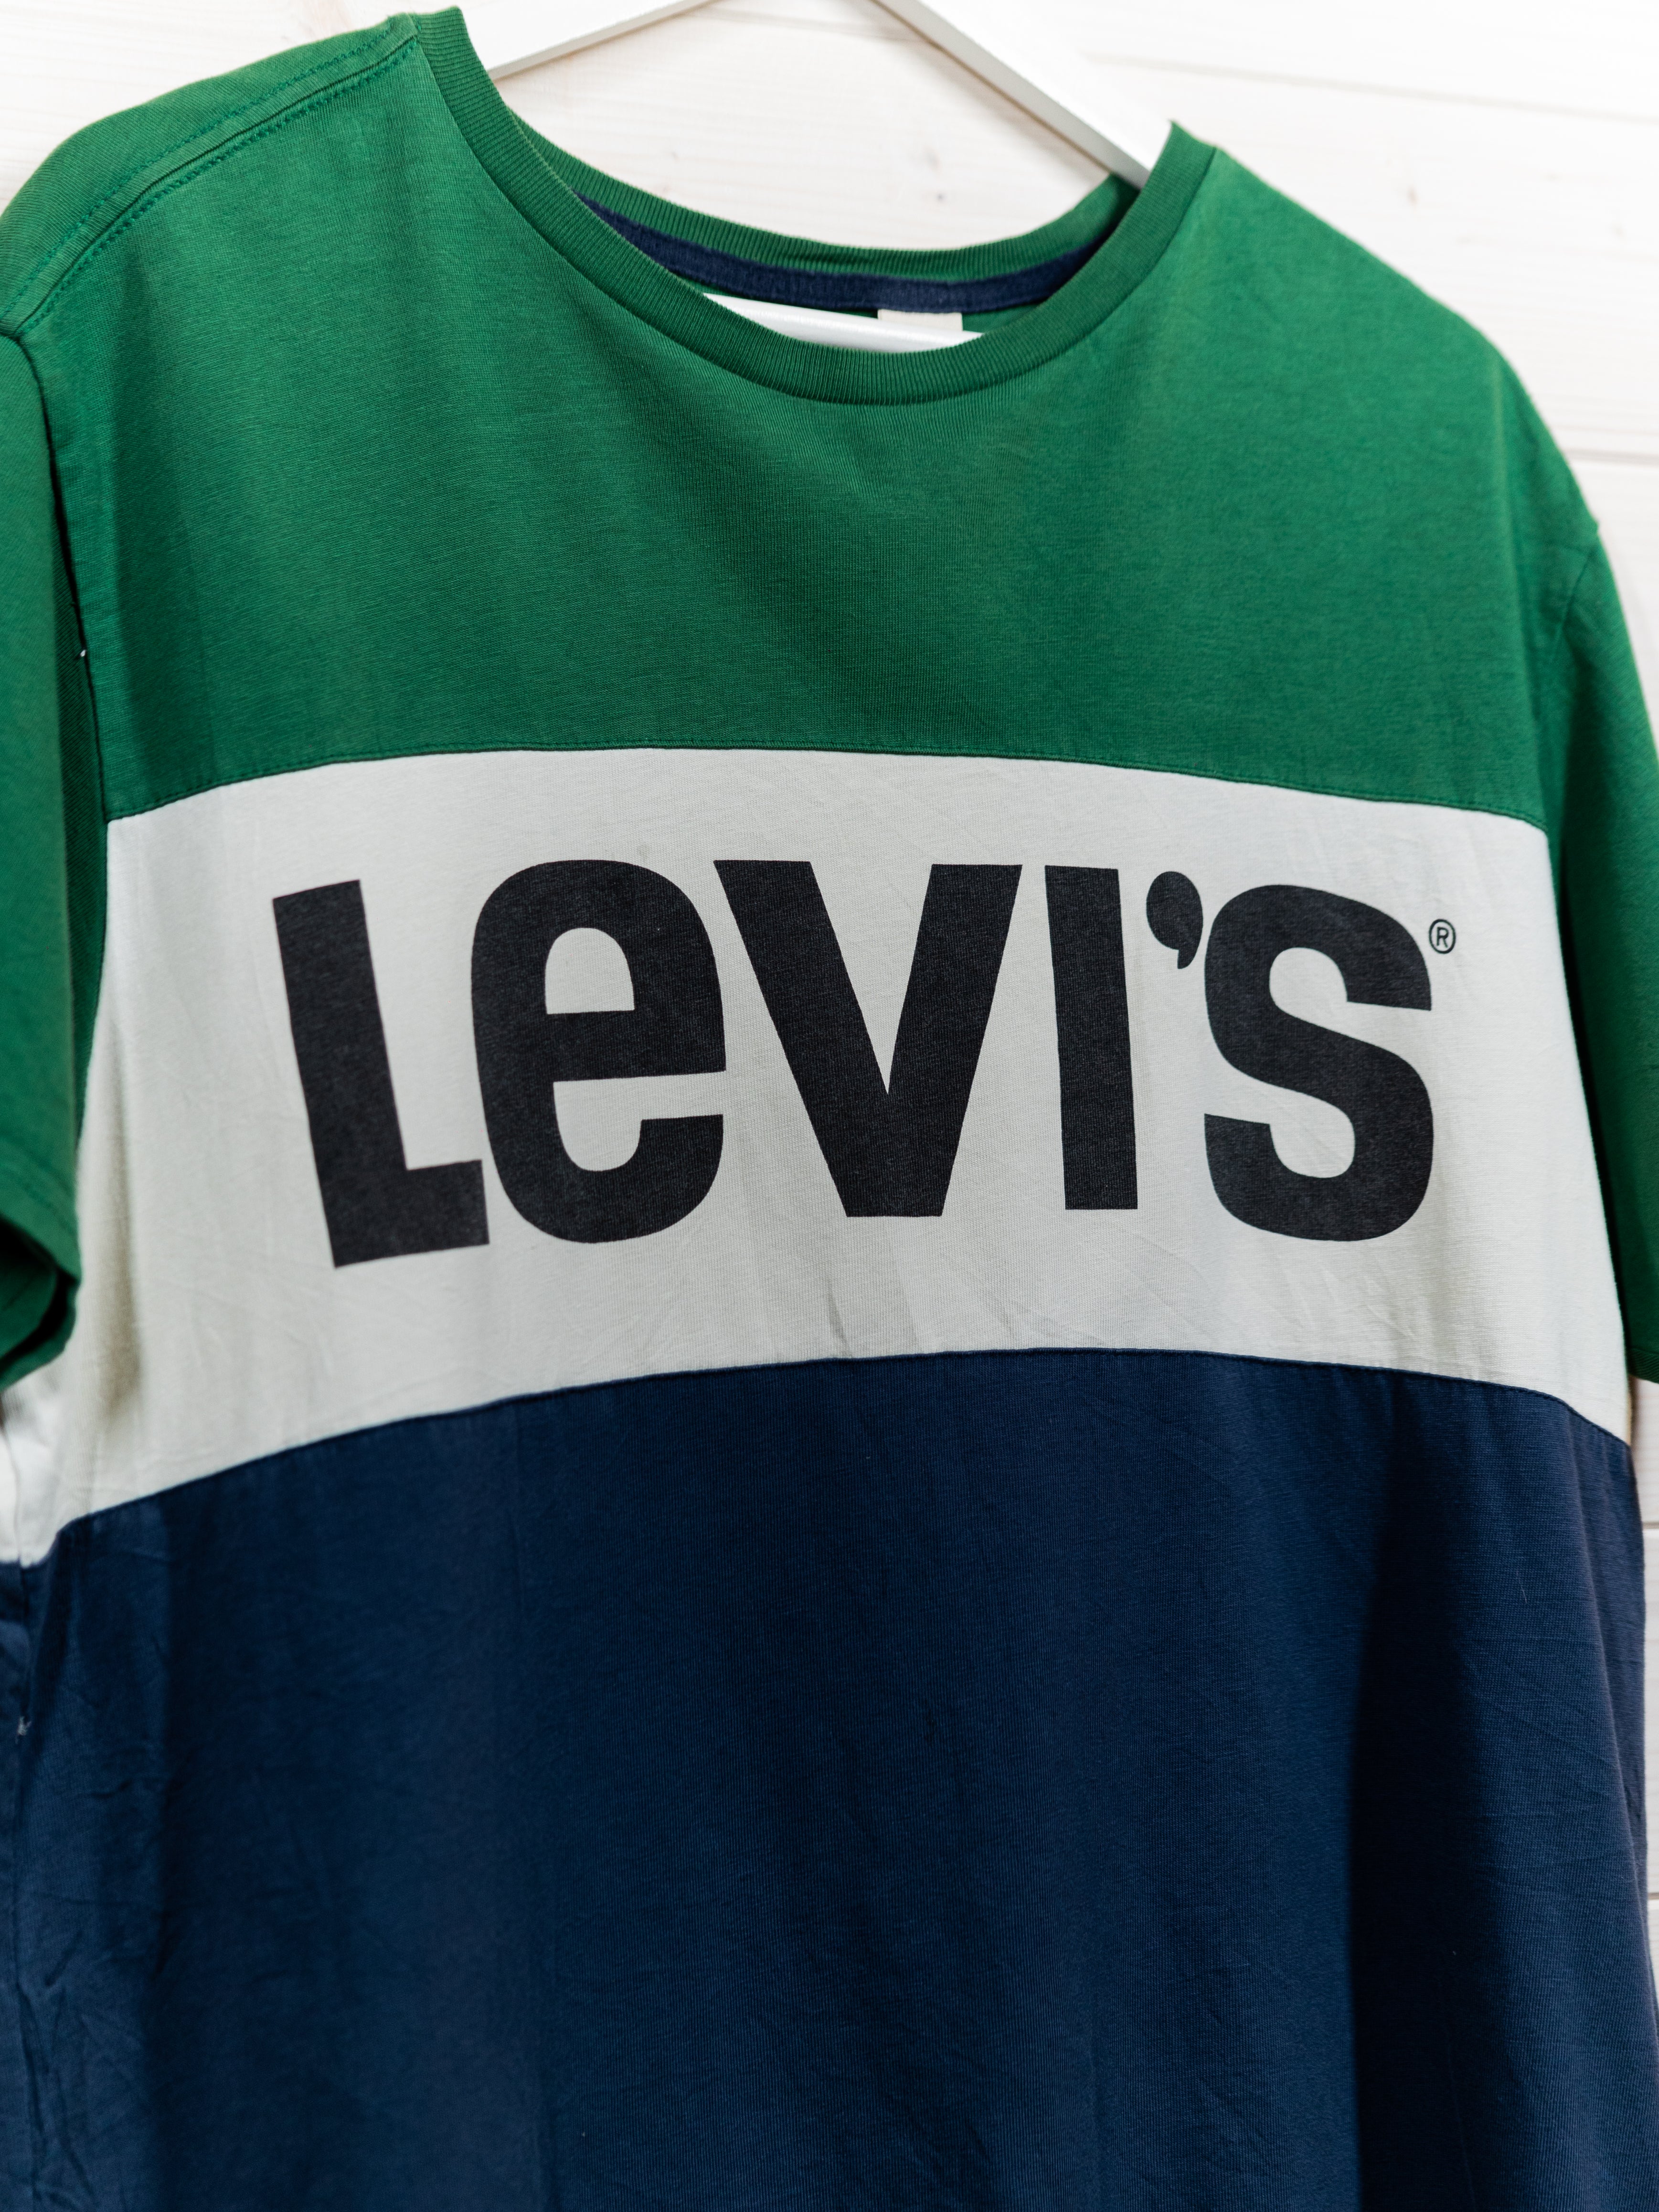 T-Shirt Levi’s Vintage 90’s